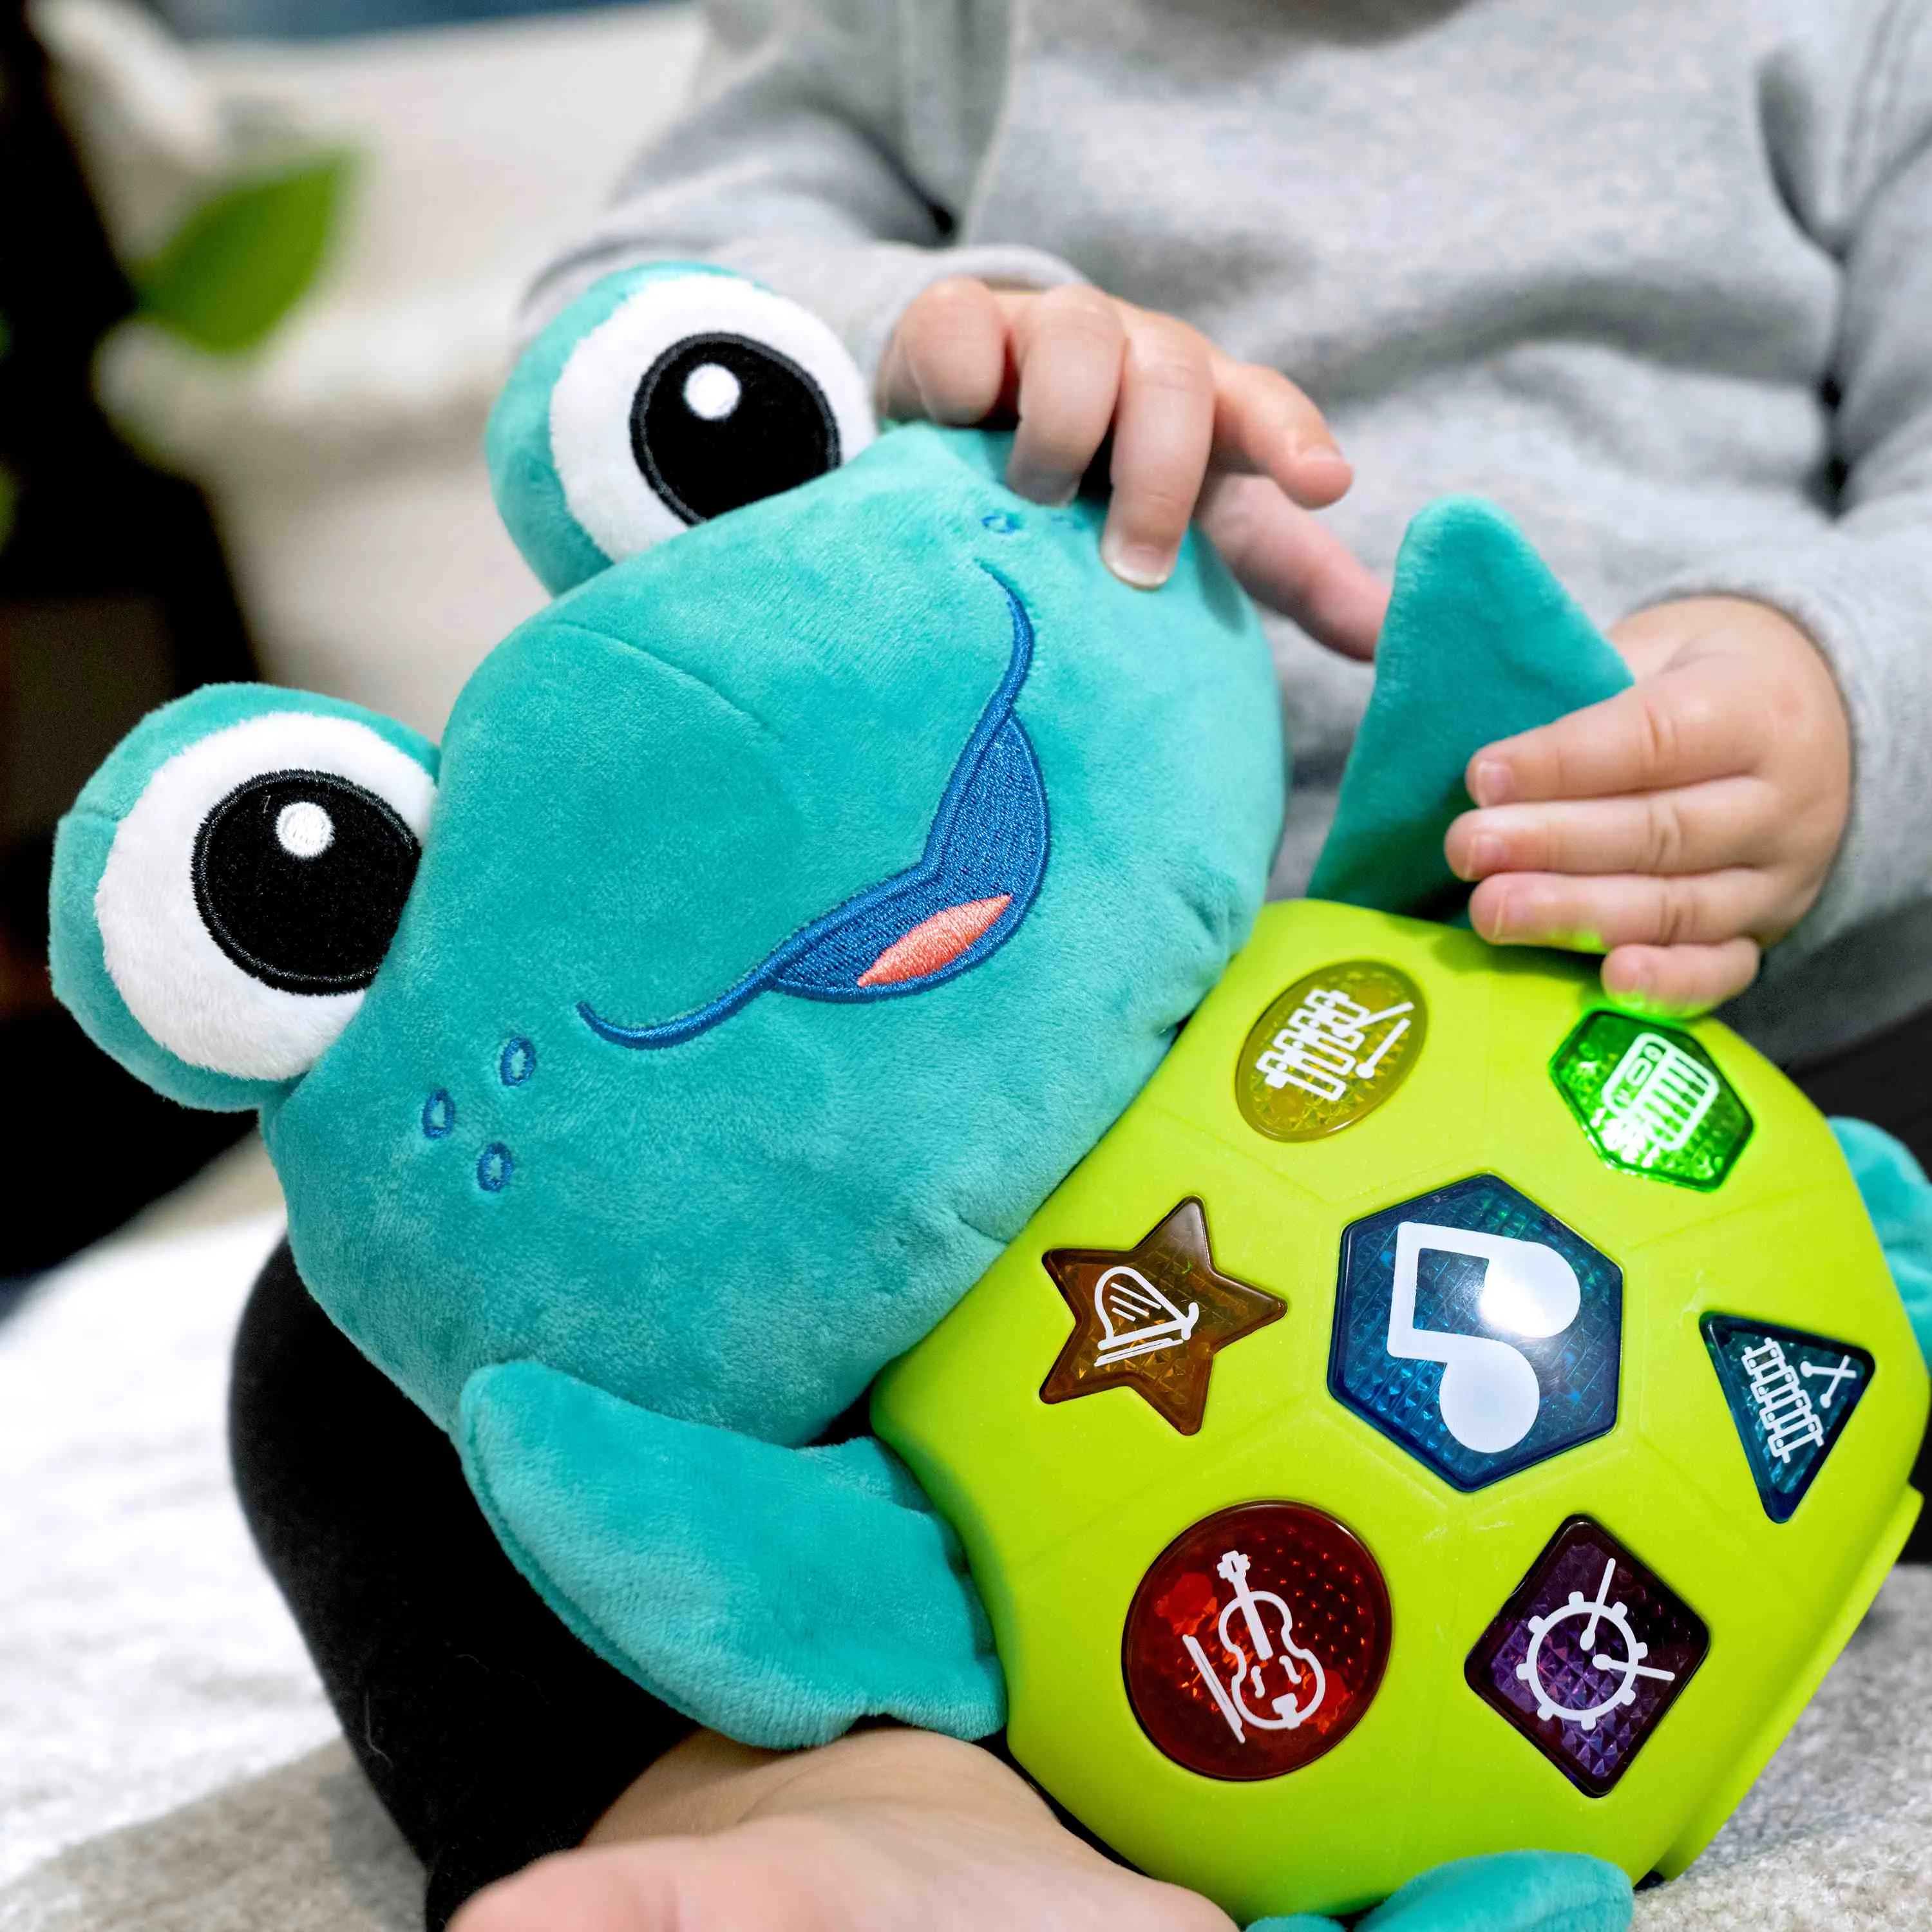 BABY EINSTEIN Hračka hudobná interaktívna korytnačka Neptune's Cuddly Composer™ 6m+™ 6m+ 1×1 ks, hračka pre deti